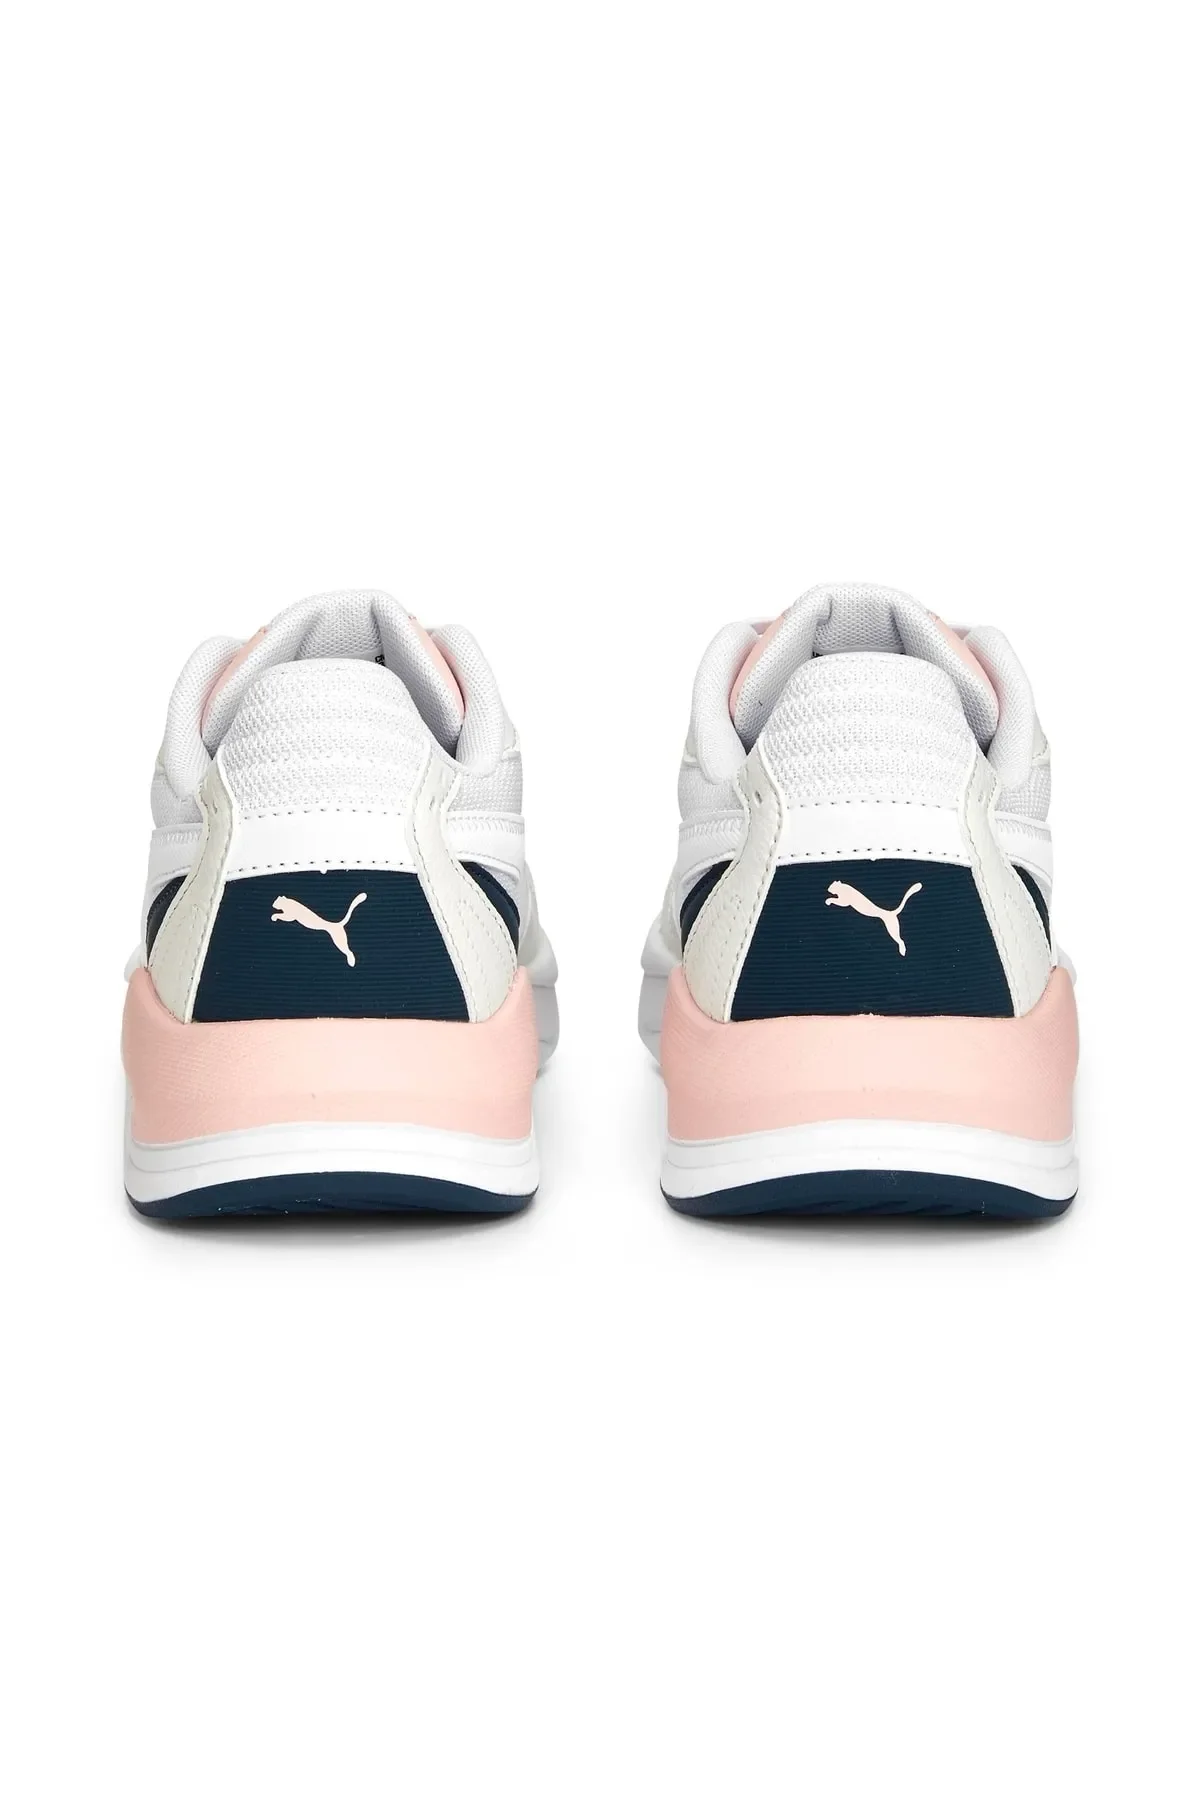 X-Ray Speed Lite - Kadın Sneaker Ayakkabı 384639 -Beyaz - 4